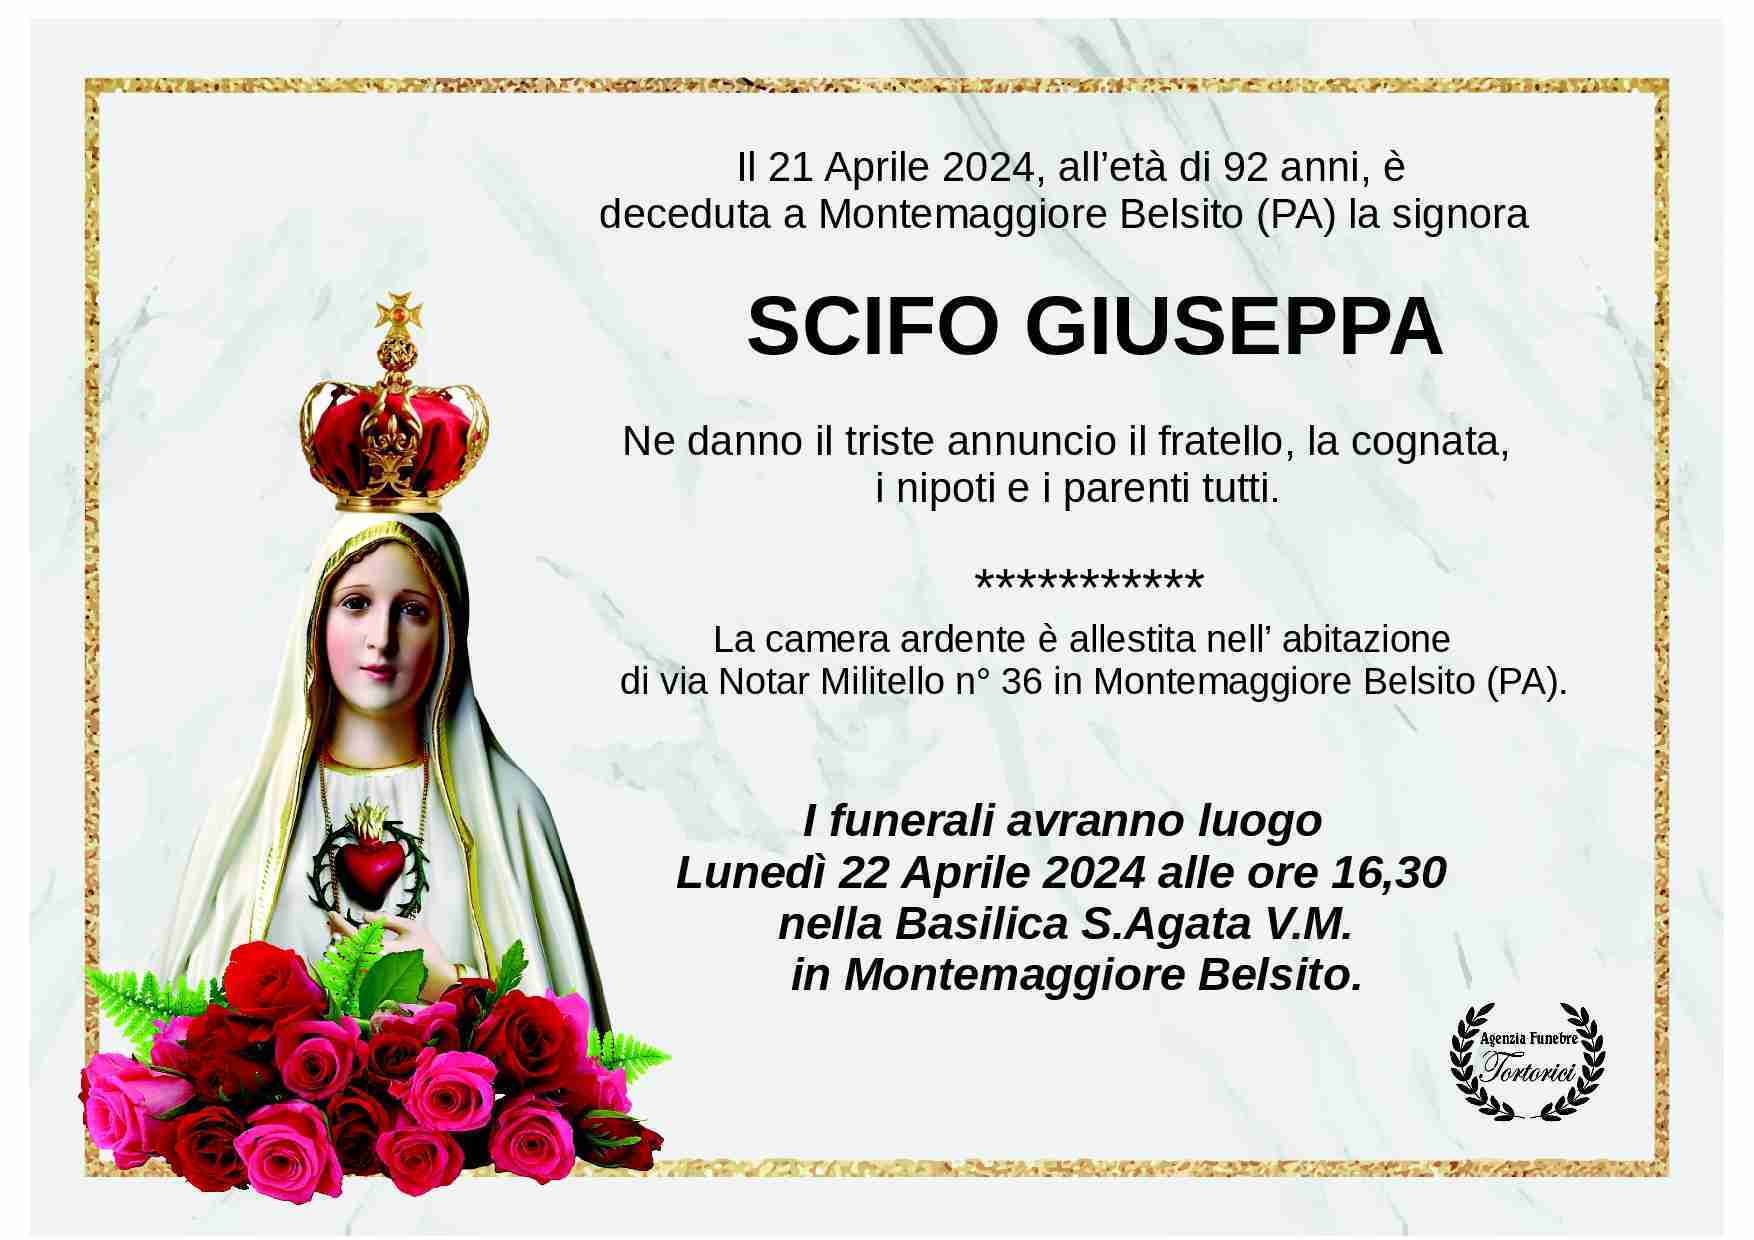 Giuseppa Scifo